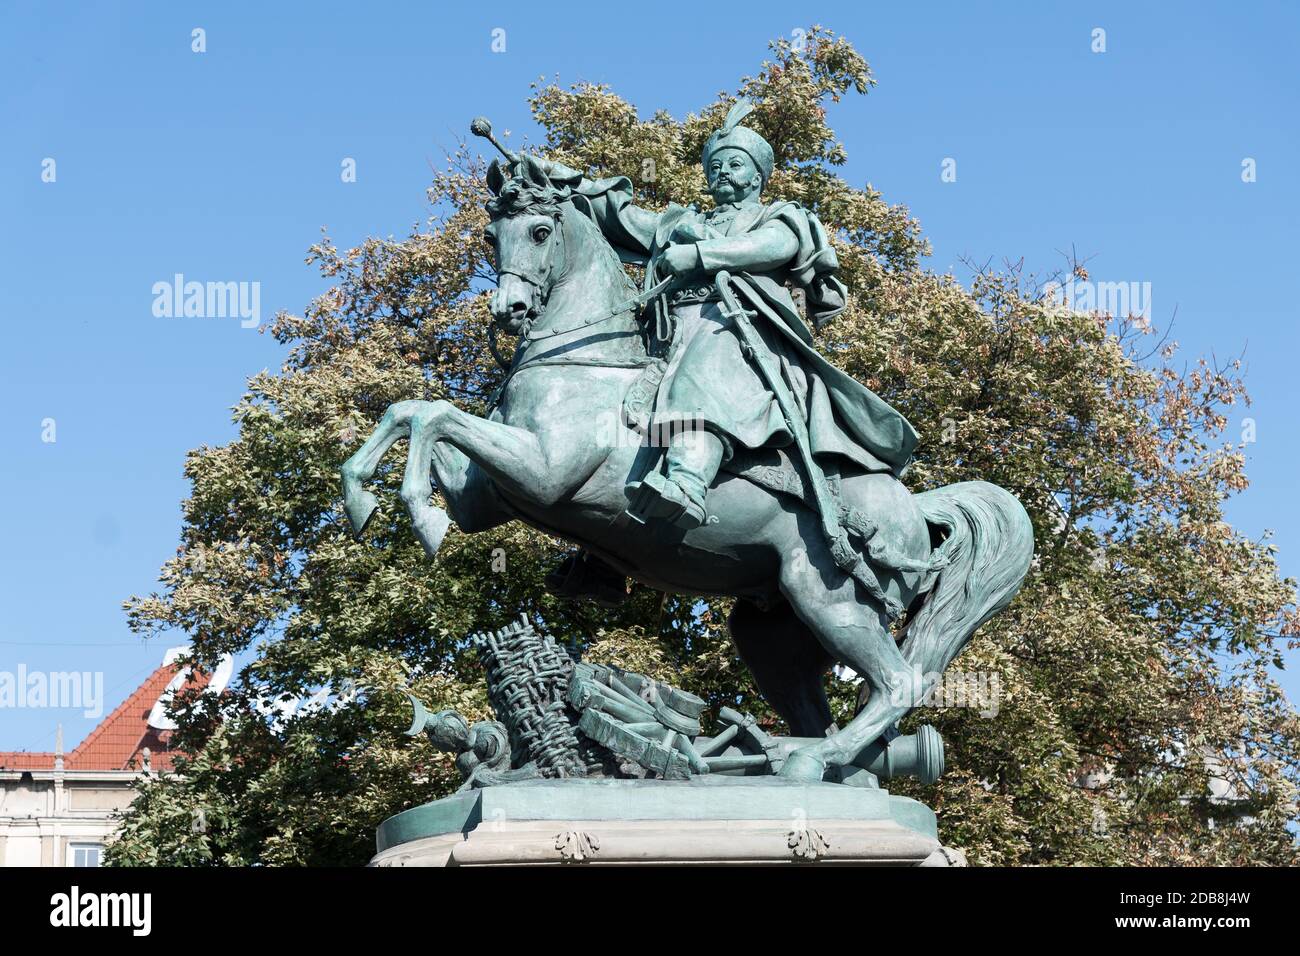 Equestrian Polish king Jan III Sobieski monument in Gdansk, Poland. September 23rd 2020 © Wojciech Strozyk / Alamy Stock Photo Stock Photo